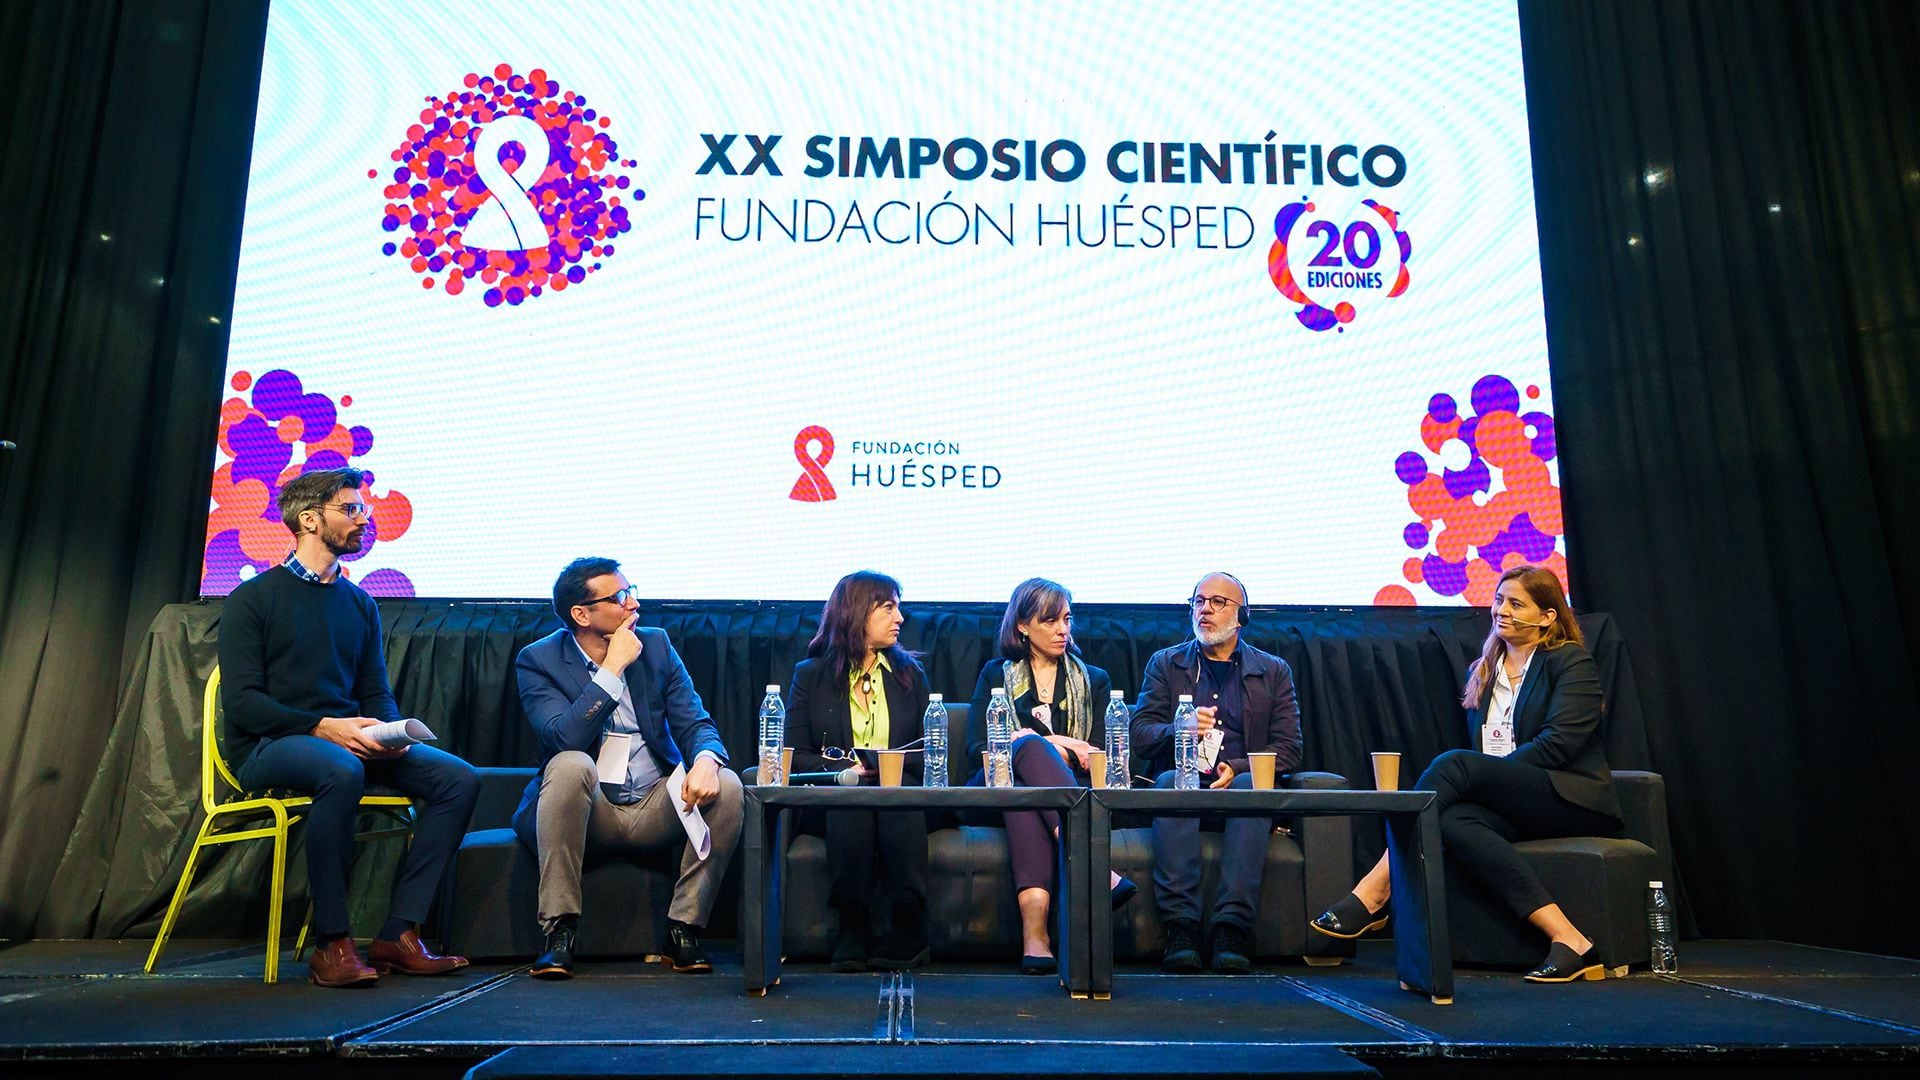 El XX Simposio Científico de Fundación Huésped tuvo lugar del 30 de agosto al 1 de septiembre, en el Palais Rouge de Buenos Aires (Fundación Huésped)